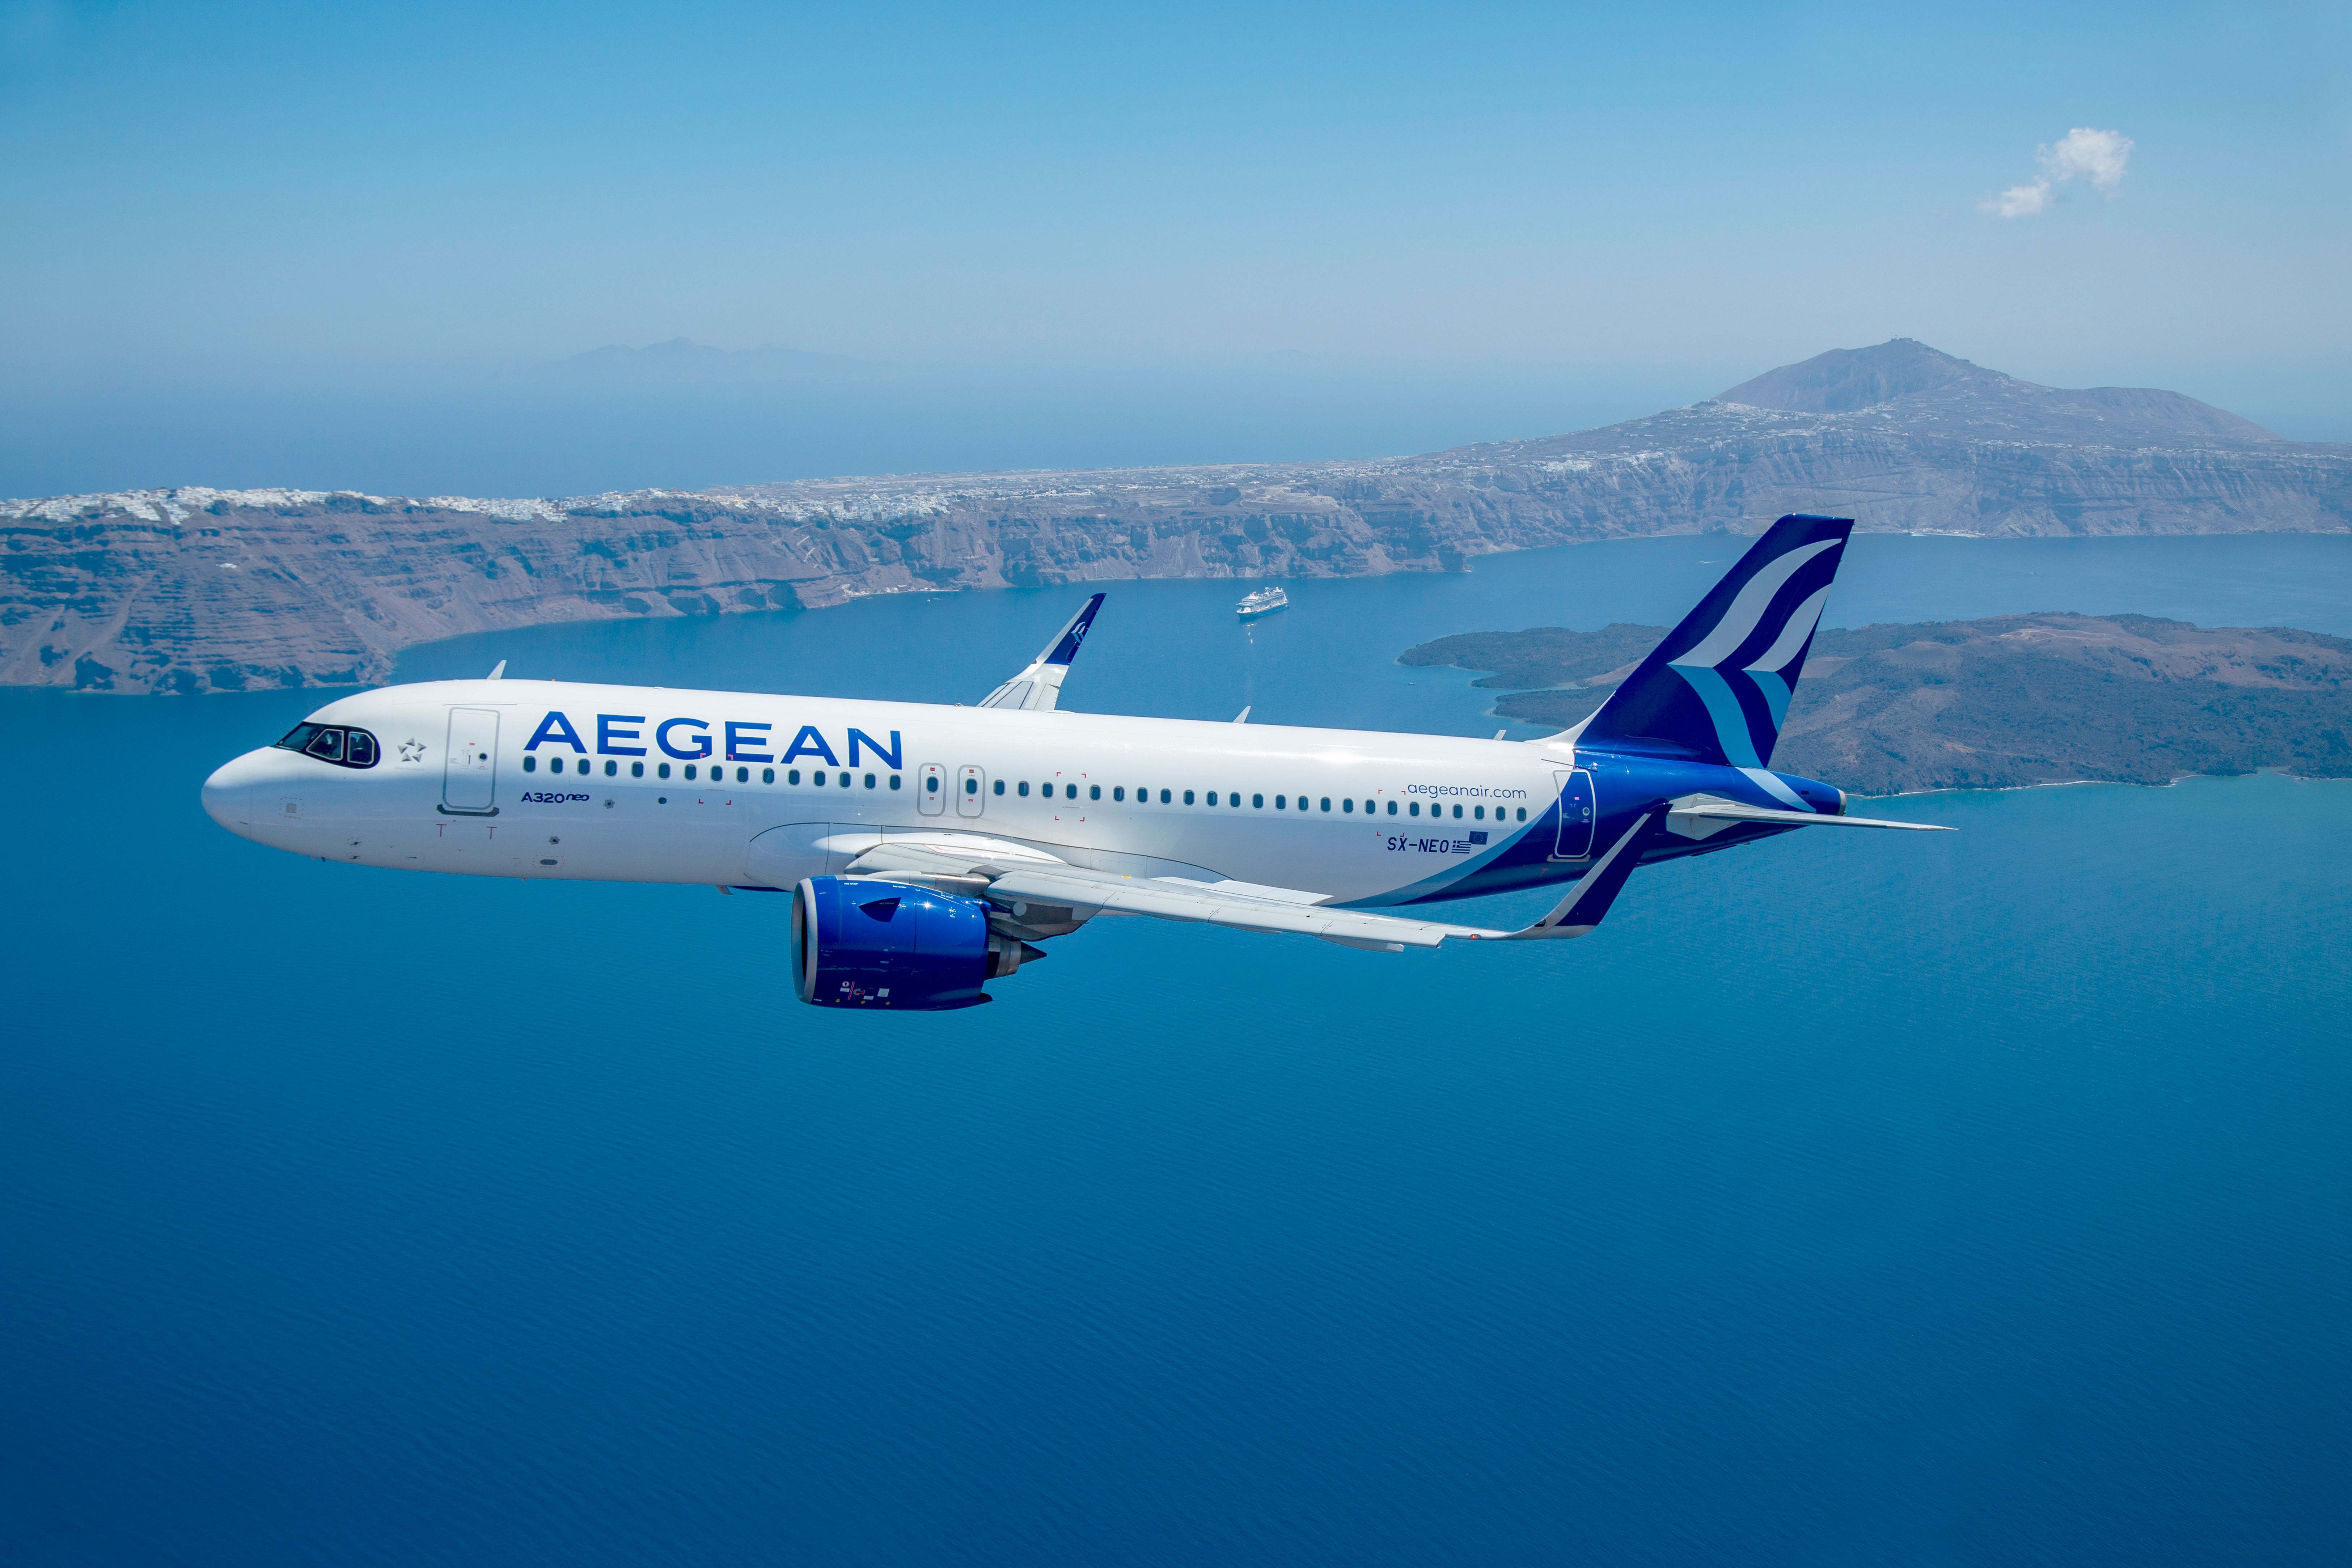 Aegean Airlines 